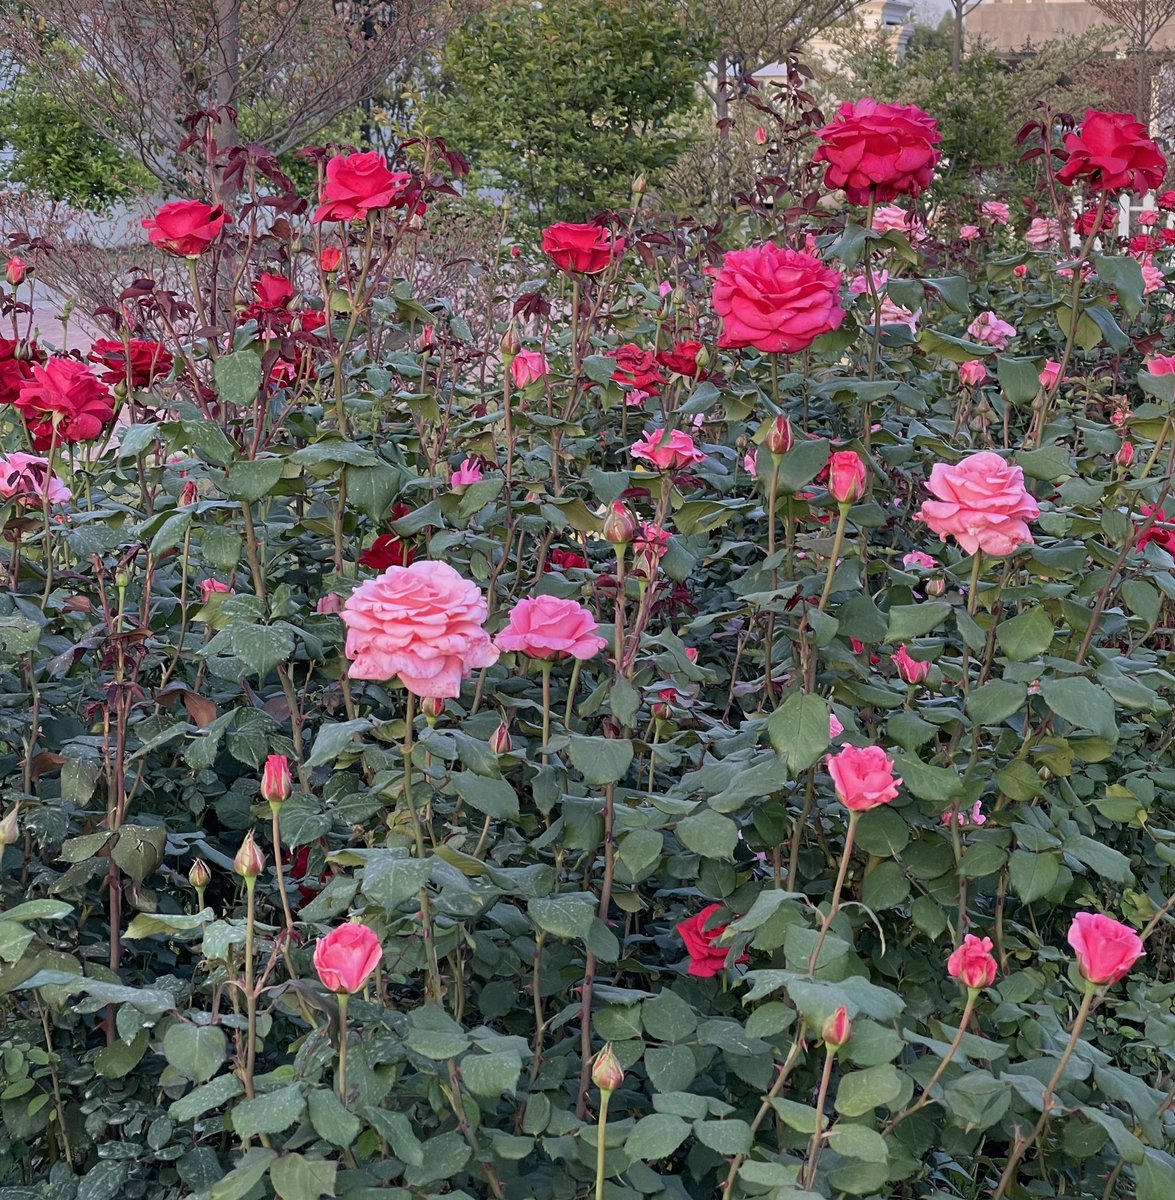 Some of the roses in our garden. #garden #gardening #GardeningTwitter #ROSE #roses #HomeGarden #englishrose #davidaustenrose #photograghy #nature #flowers #floral #PHOTOS #montydon #chelseaflowershow